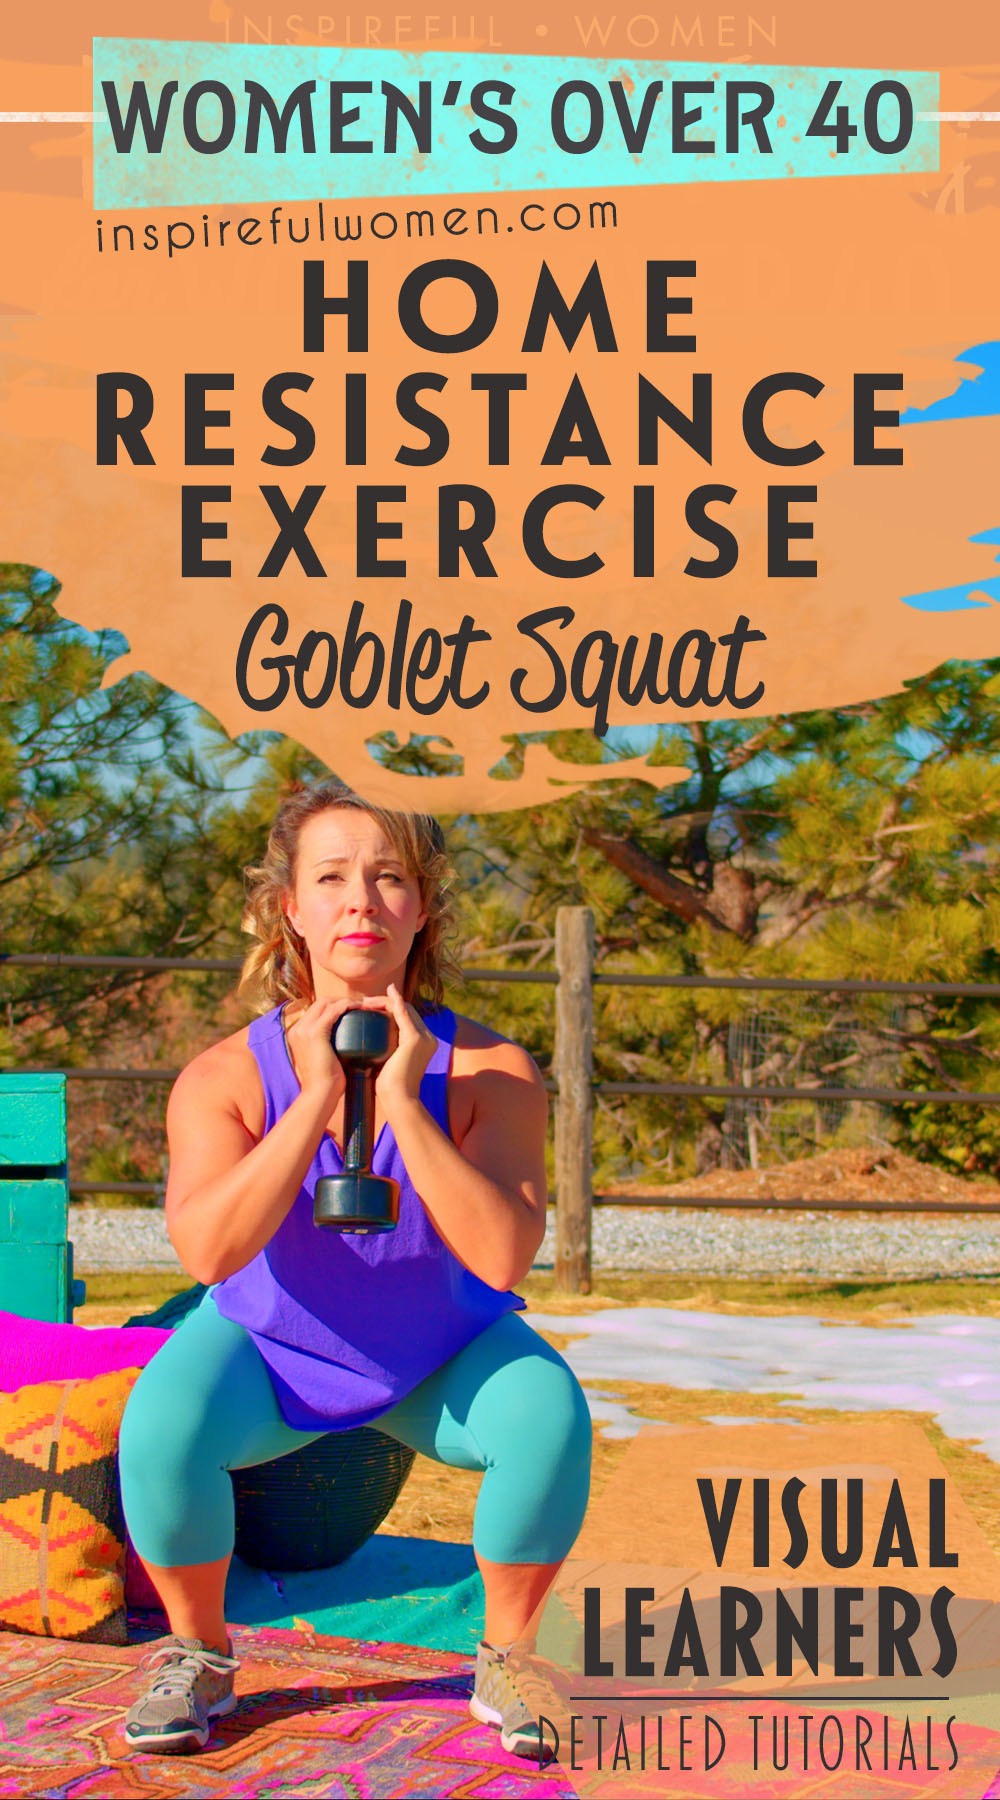 goblet-squats-dumbbells-quads-glutes-exercise-women-40-plus